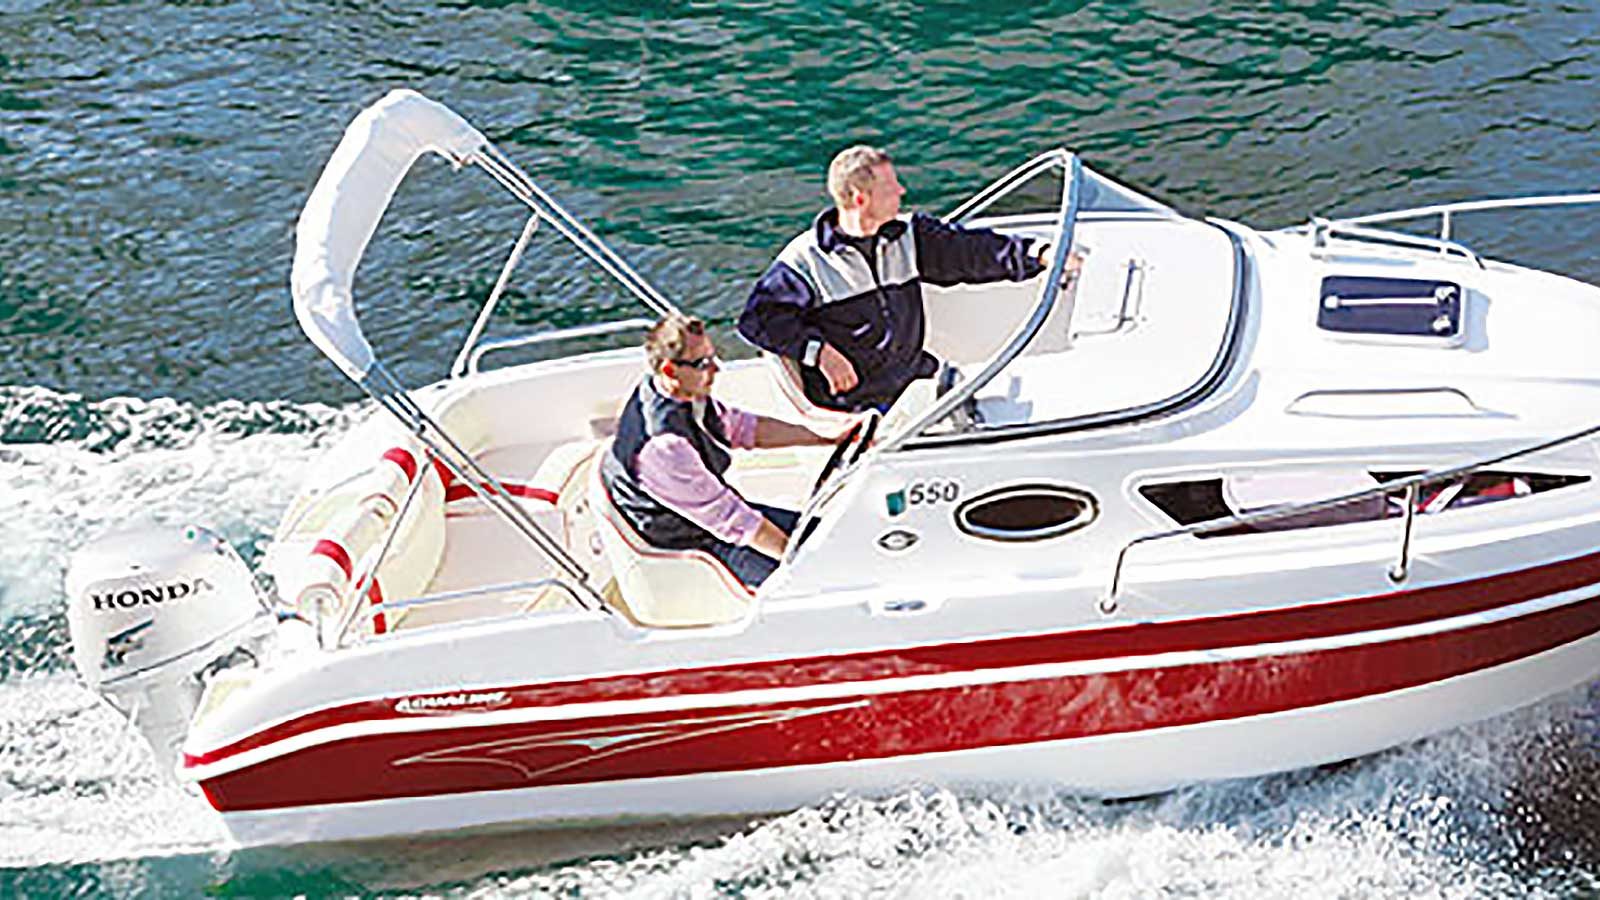 Die Aqualine 550: Ein führerscheinpflichtiges Motorboot